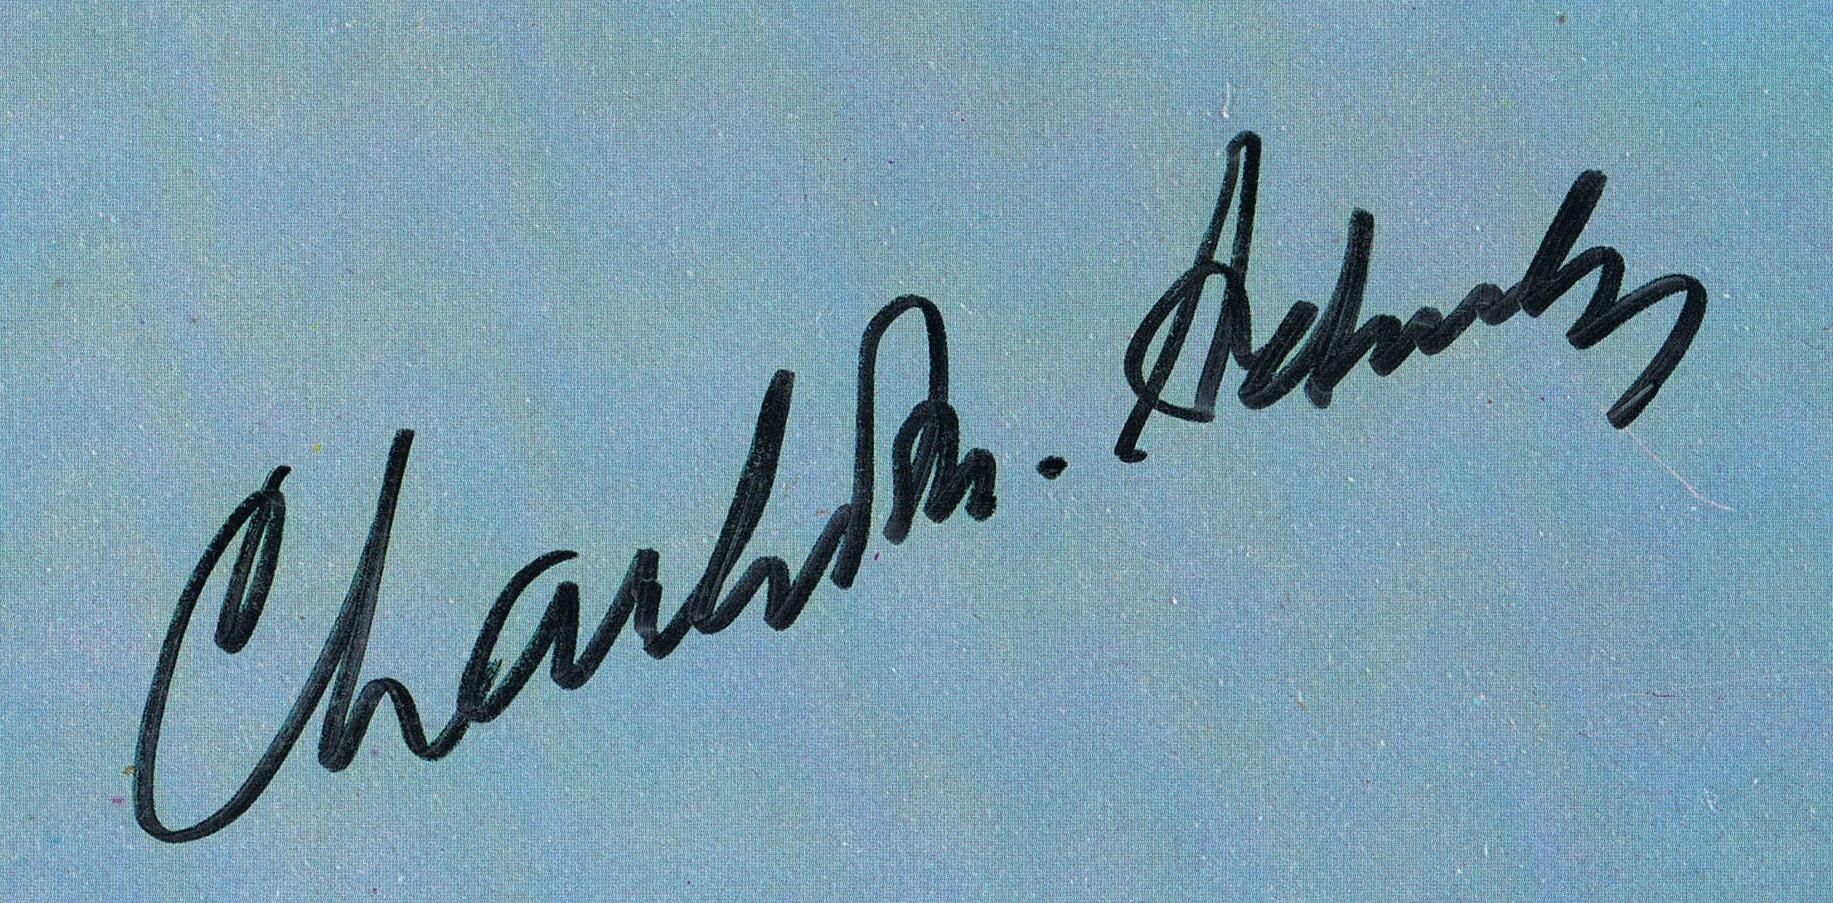 charles schulz signature